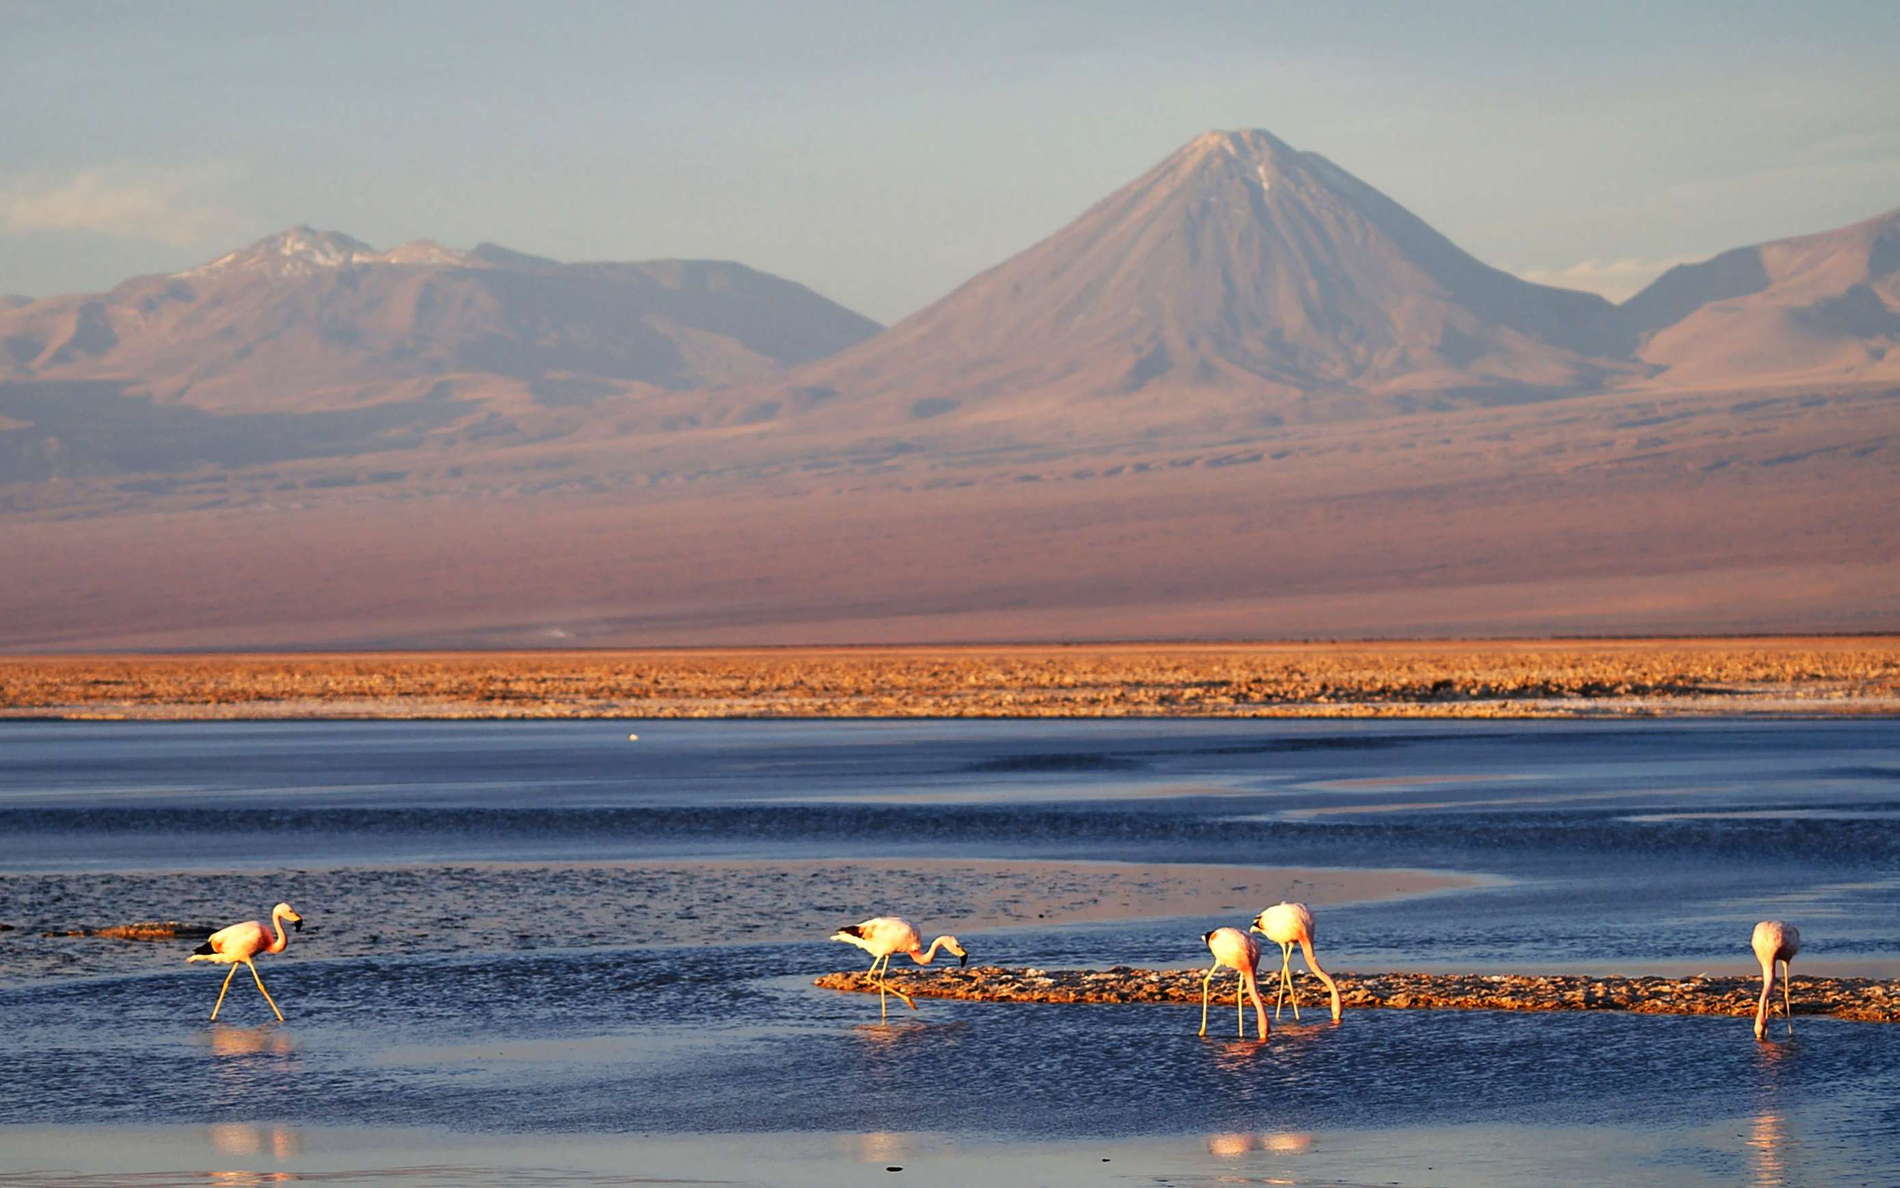 Salar de Atacama | Laguna de Chaxa with flamingos